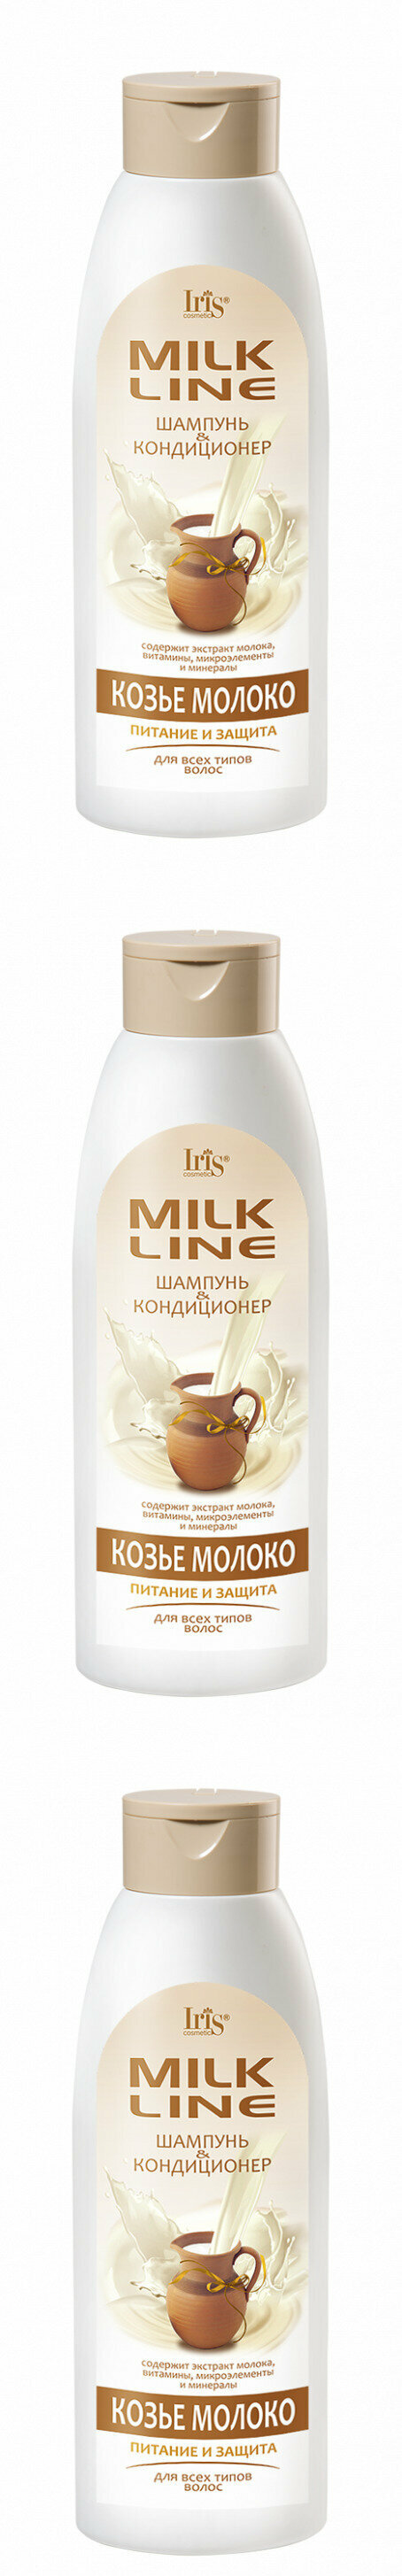 Iris шампунь-кондиционер Козье молоко, 500 мл, 3 шт